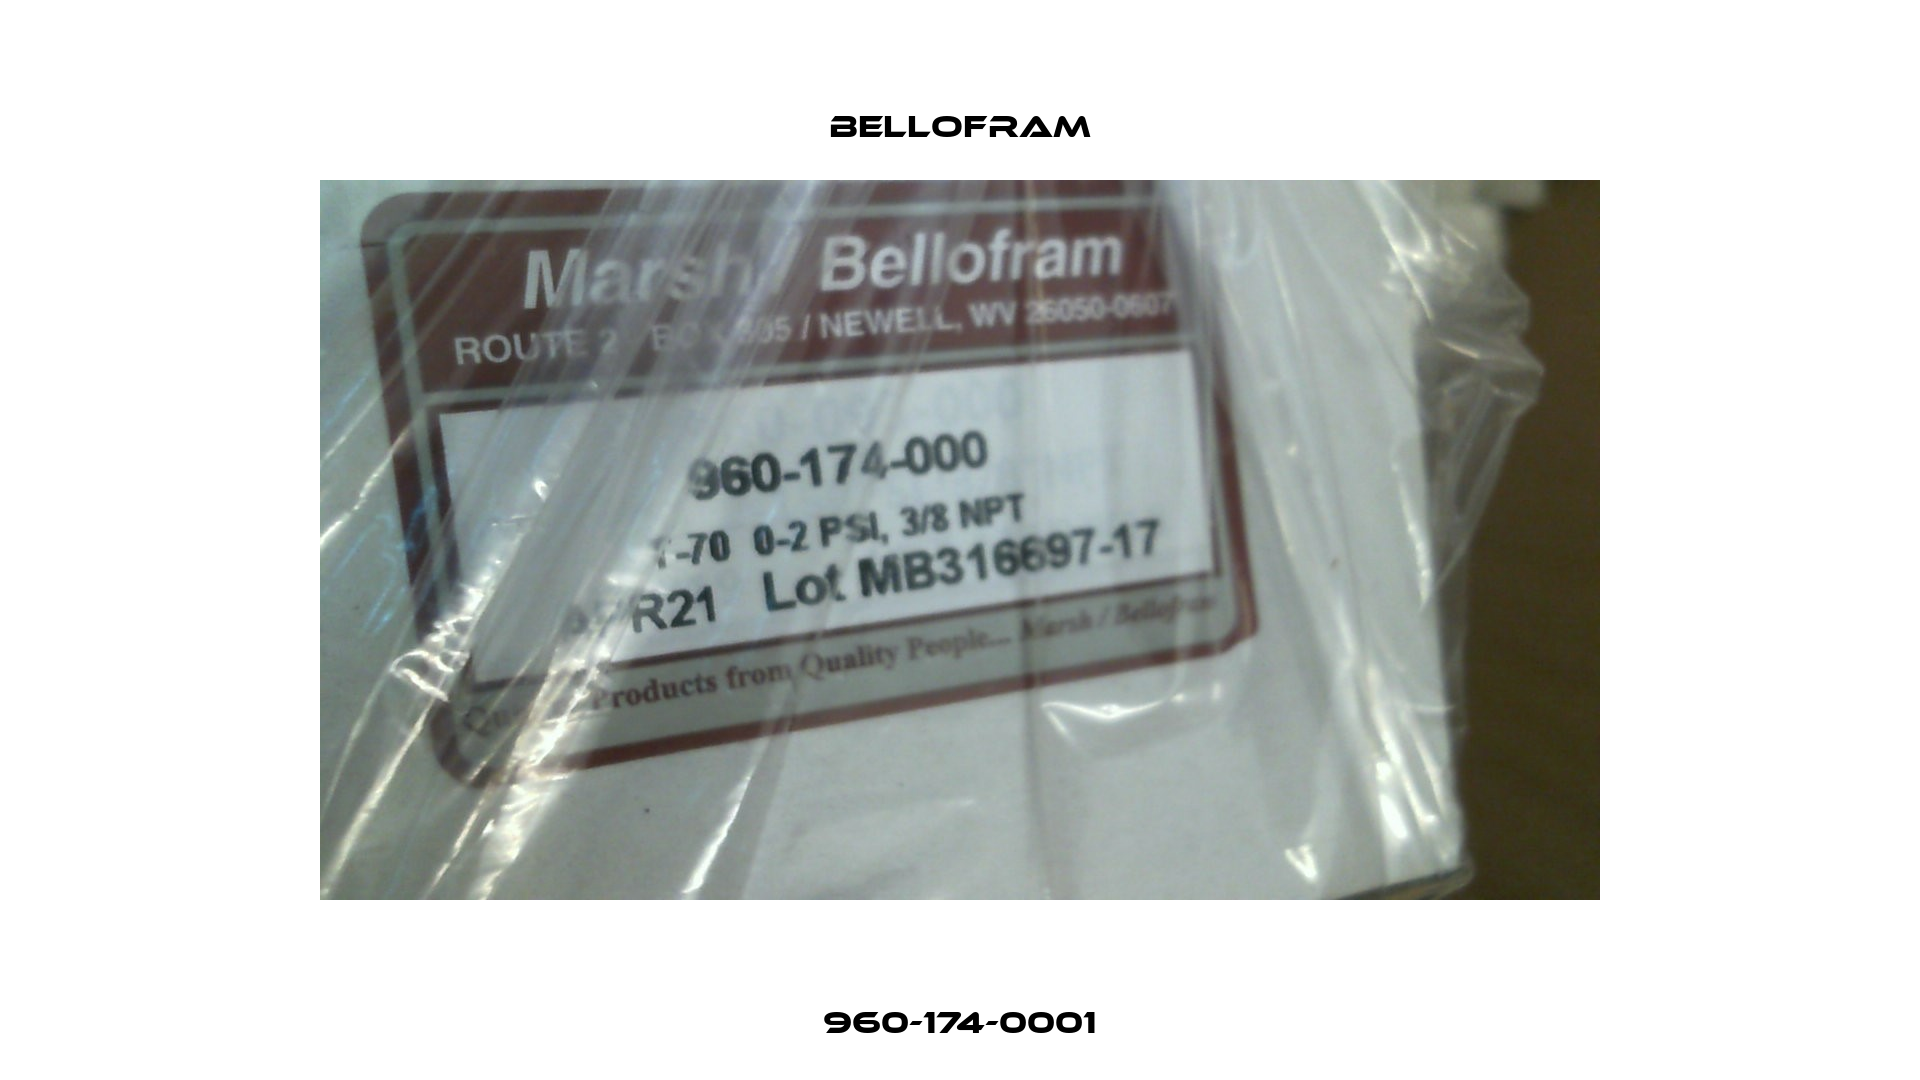 960-174-0001 Bellofram